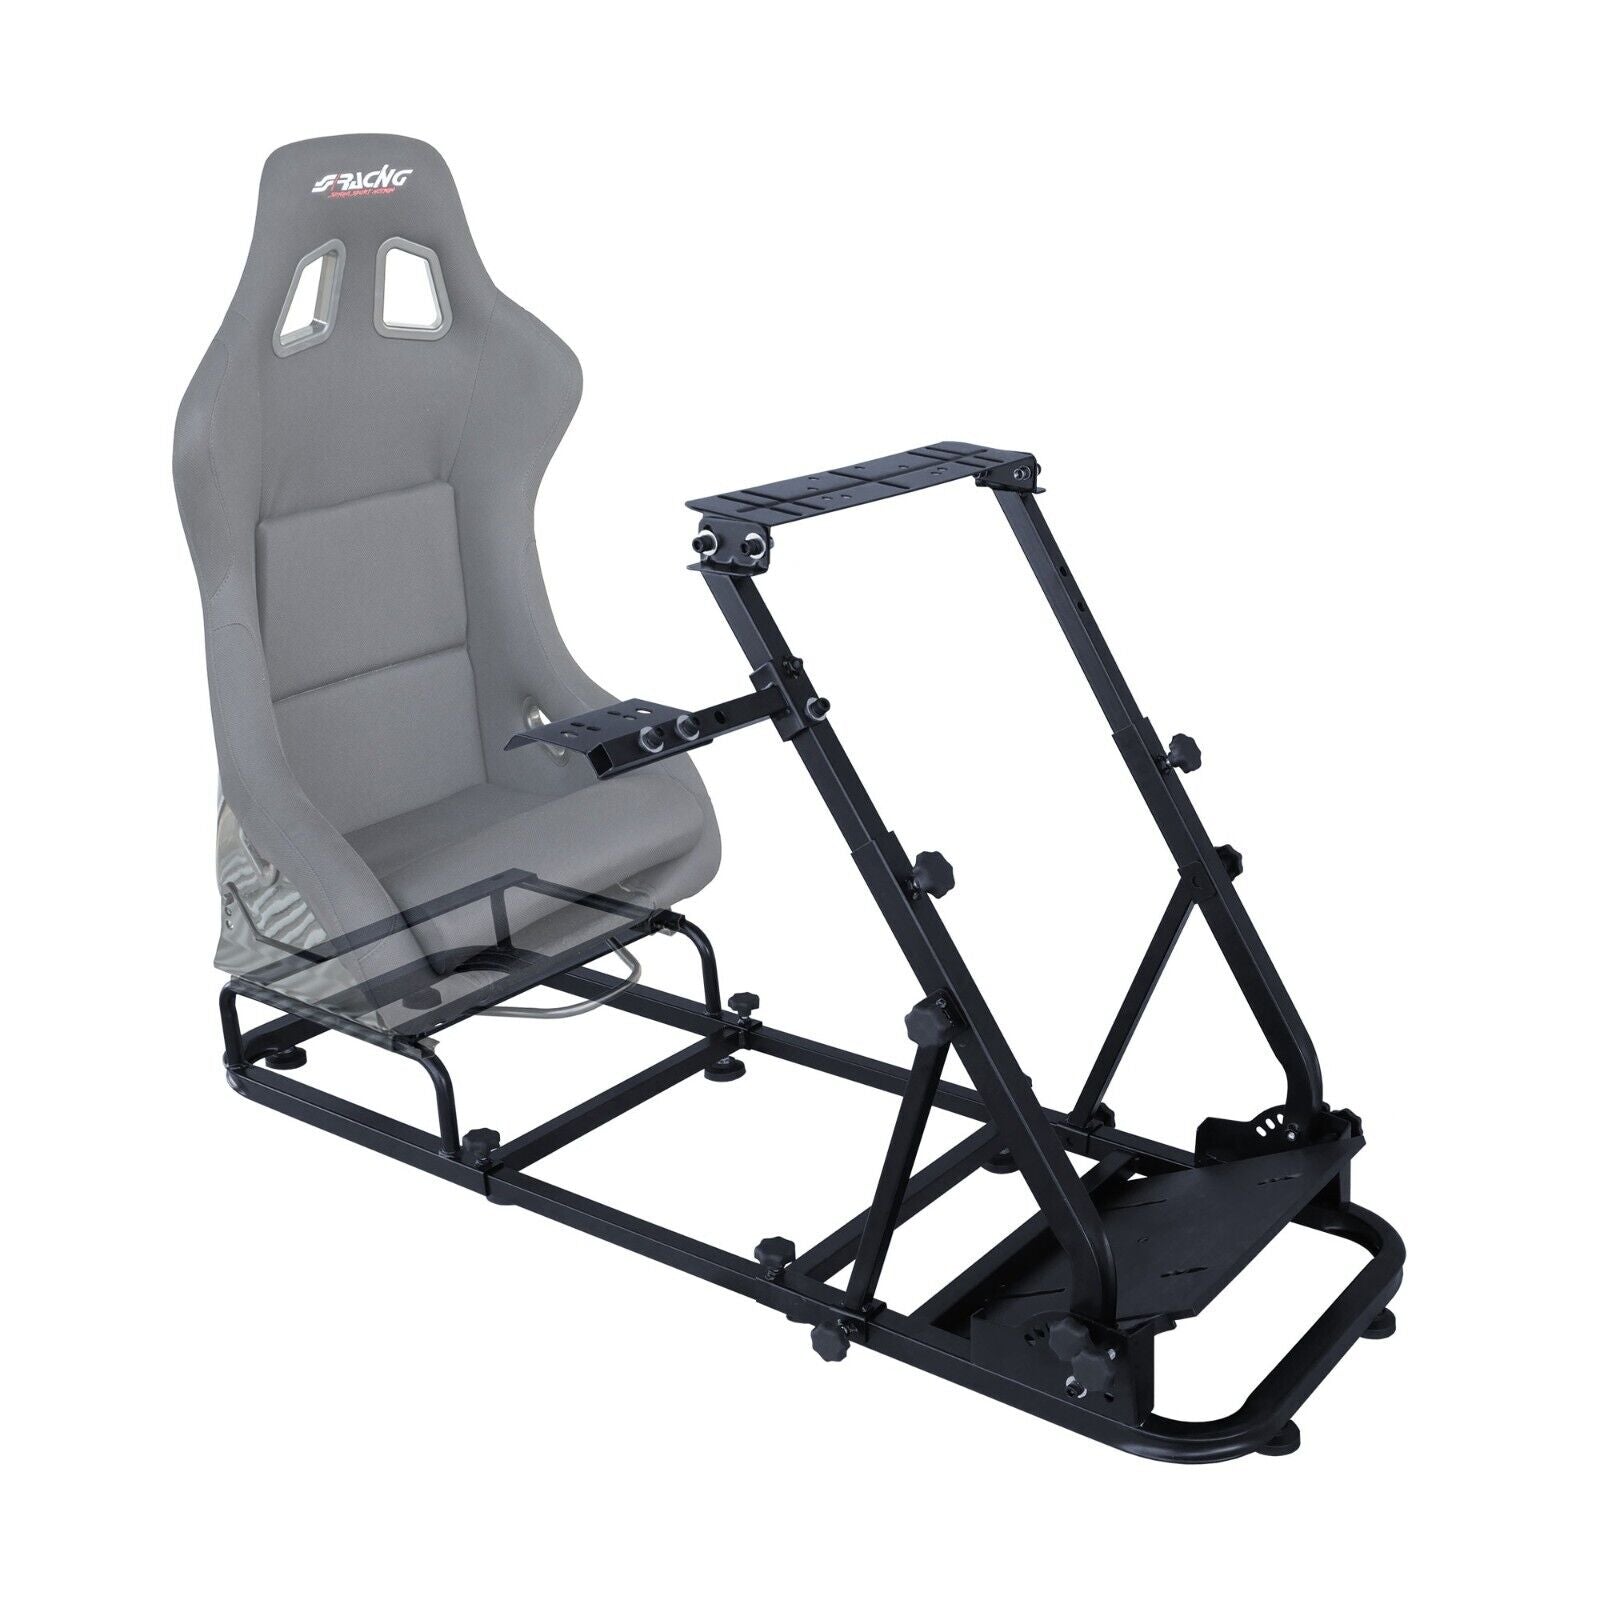 SR Fahrspiel Sim Racing Rahmengestell für Bildschirm, Sitz, Rad, Pedal – LJ  Automotive